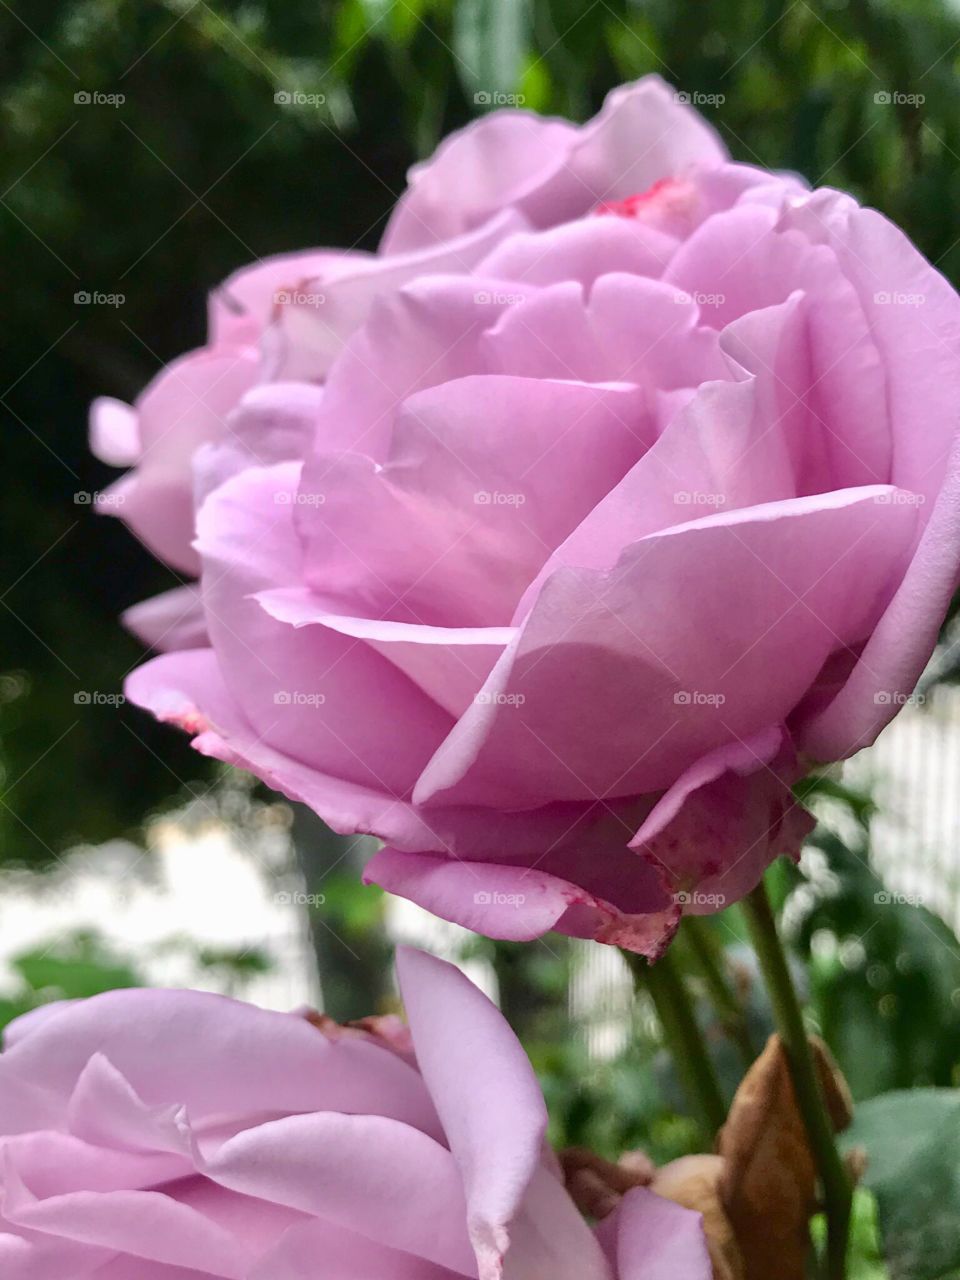 Pretty Rose